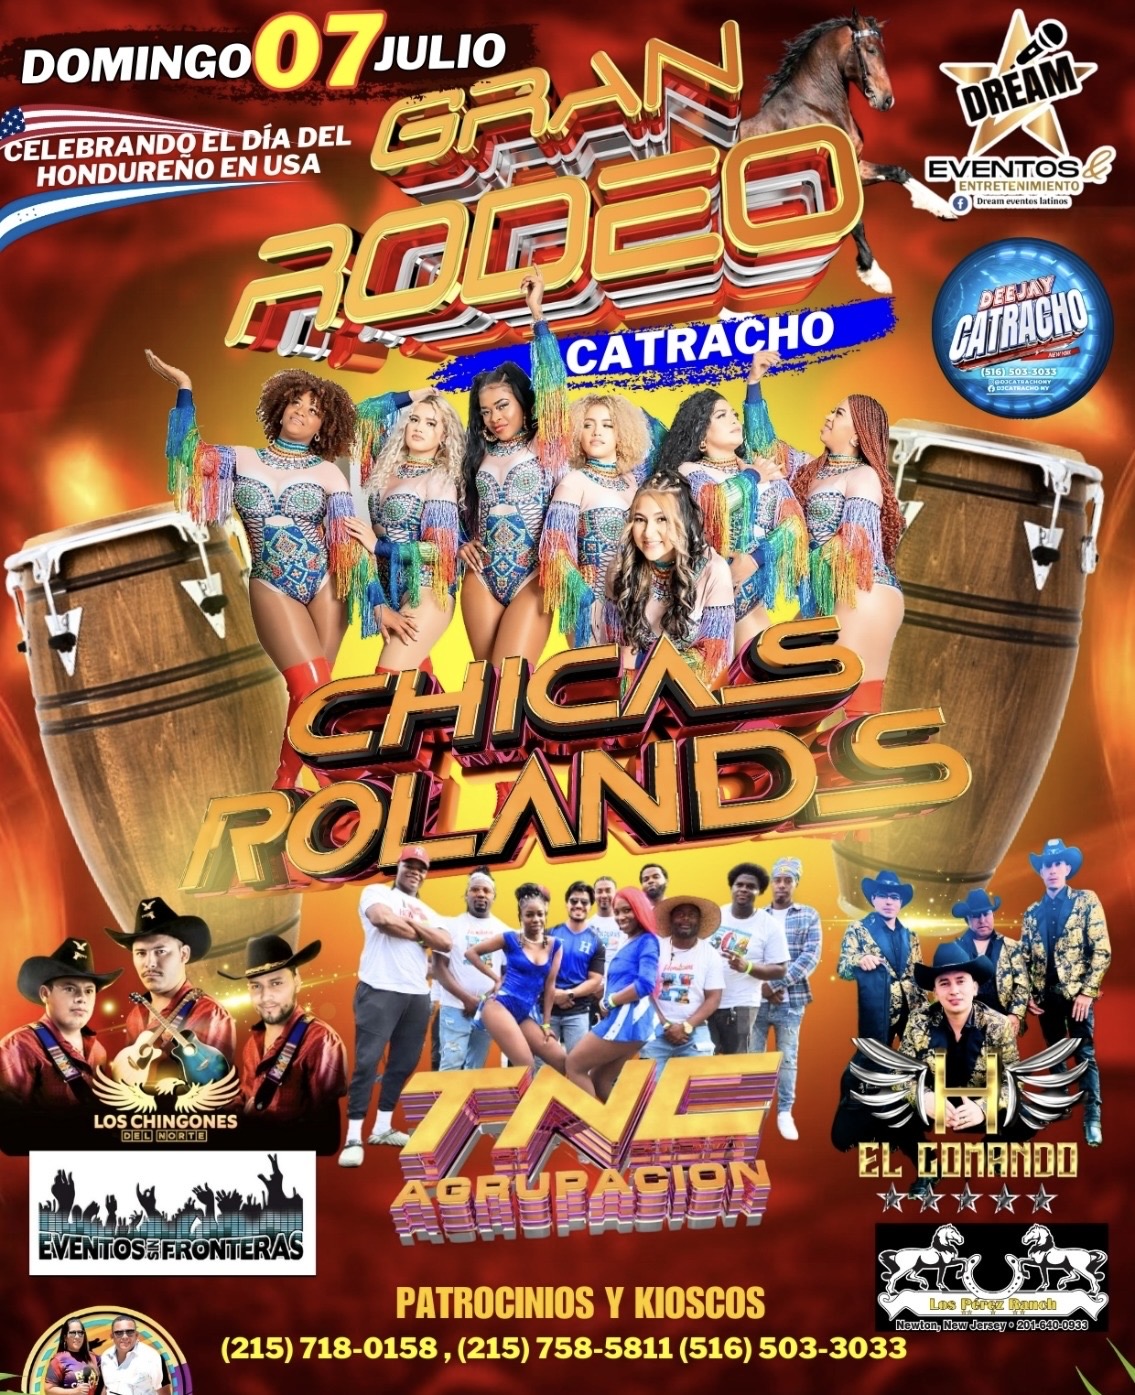 Rodeo Catracho / Rodeo /  Chicas Roland’s y más grupos / Philadelphia/ Día del Hondureño Usa